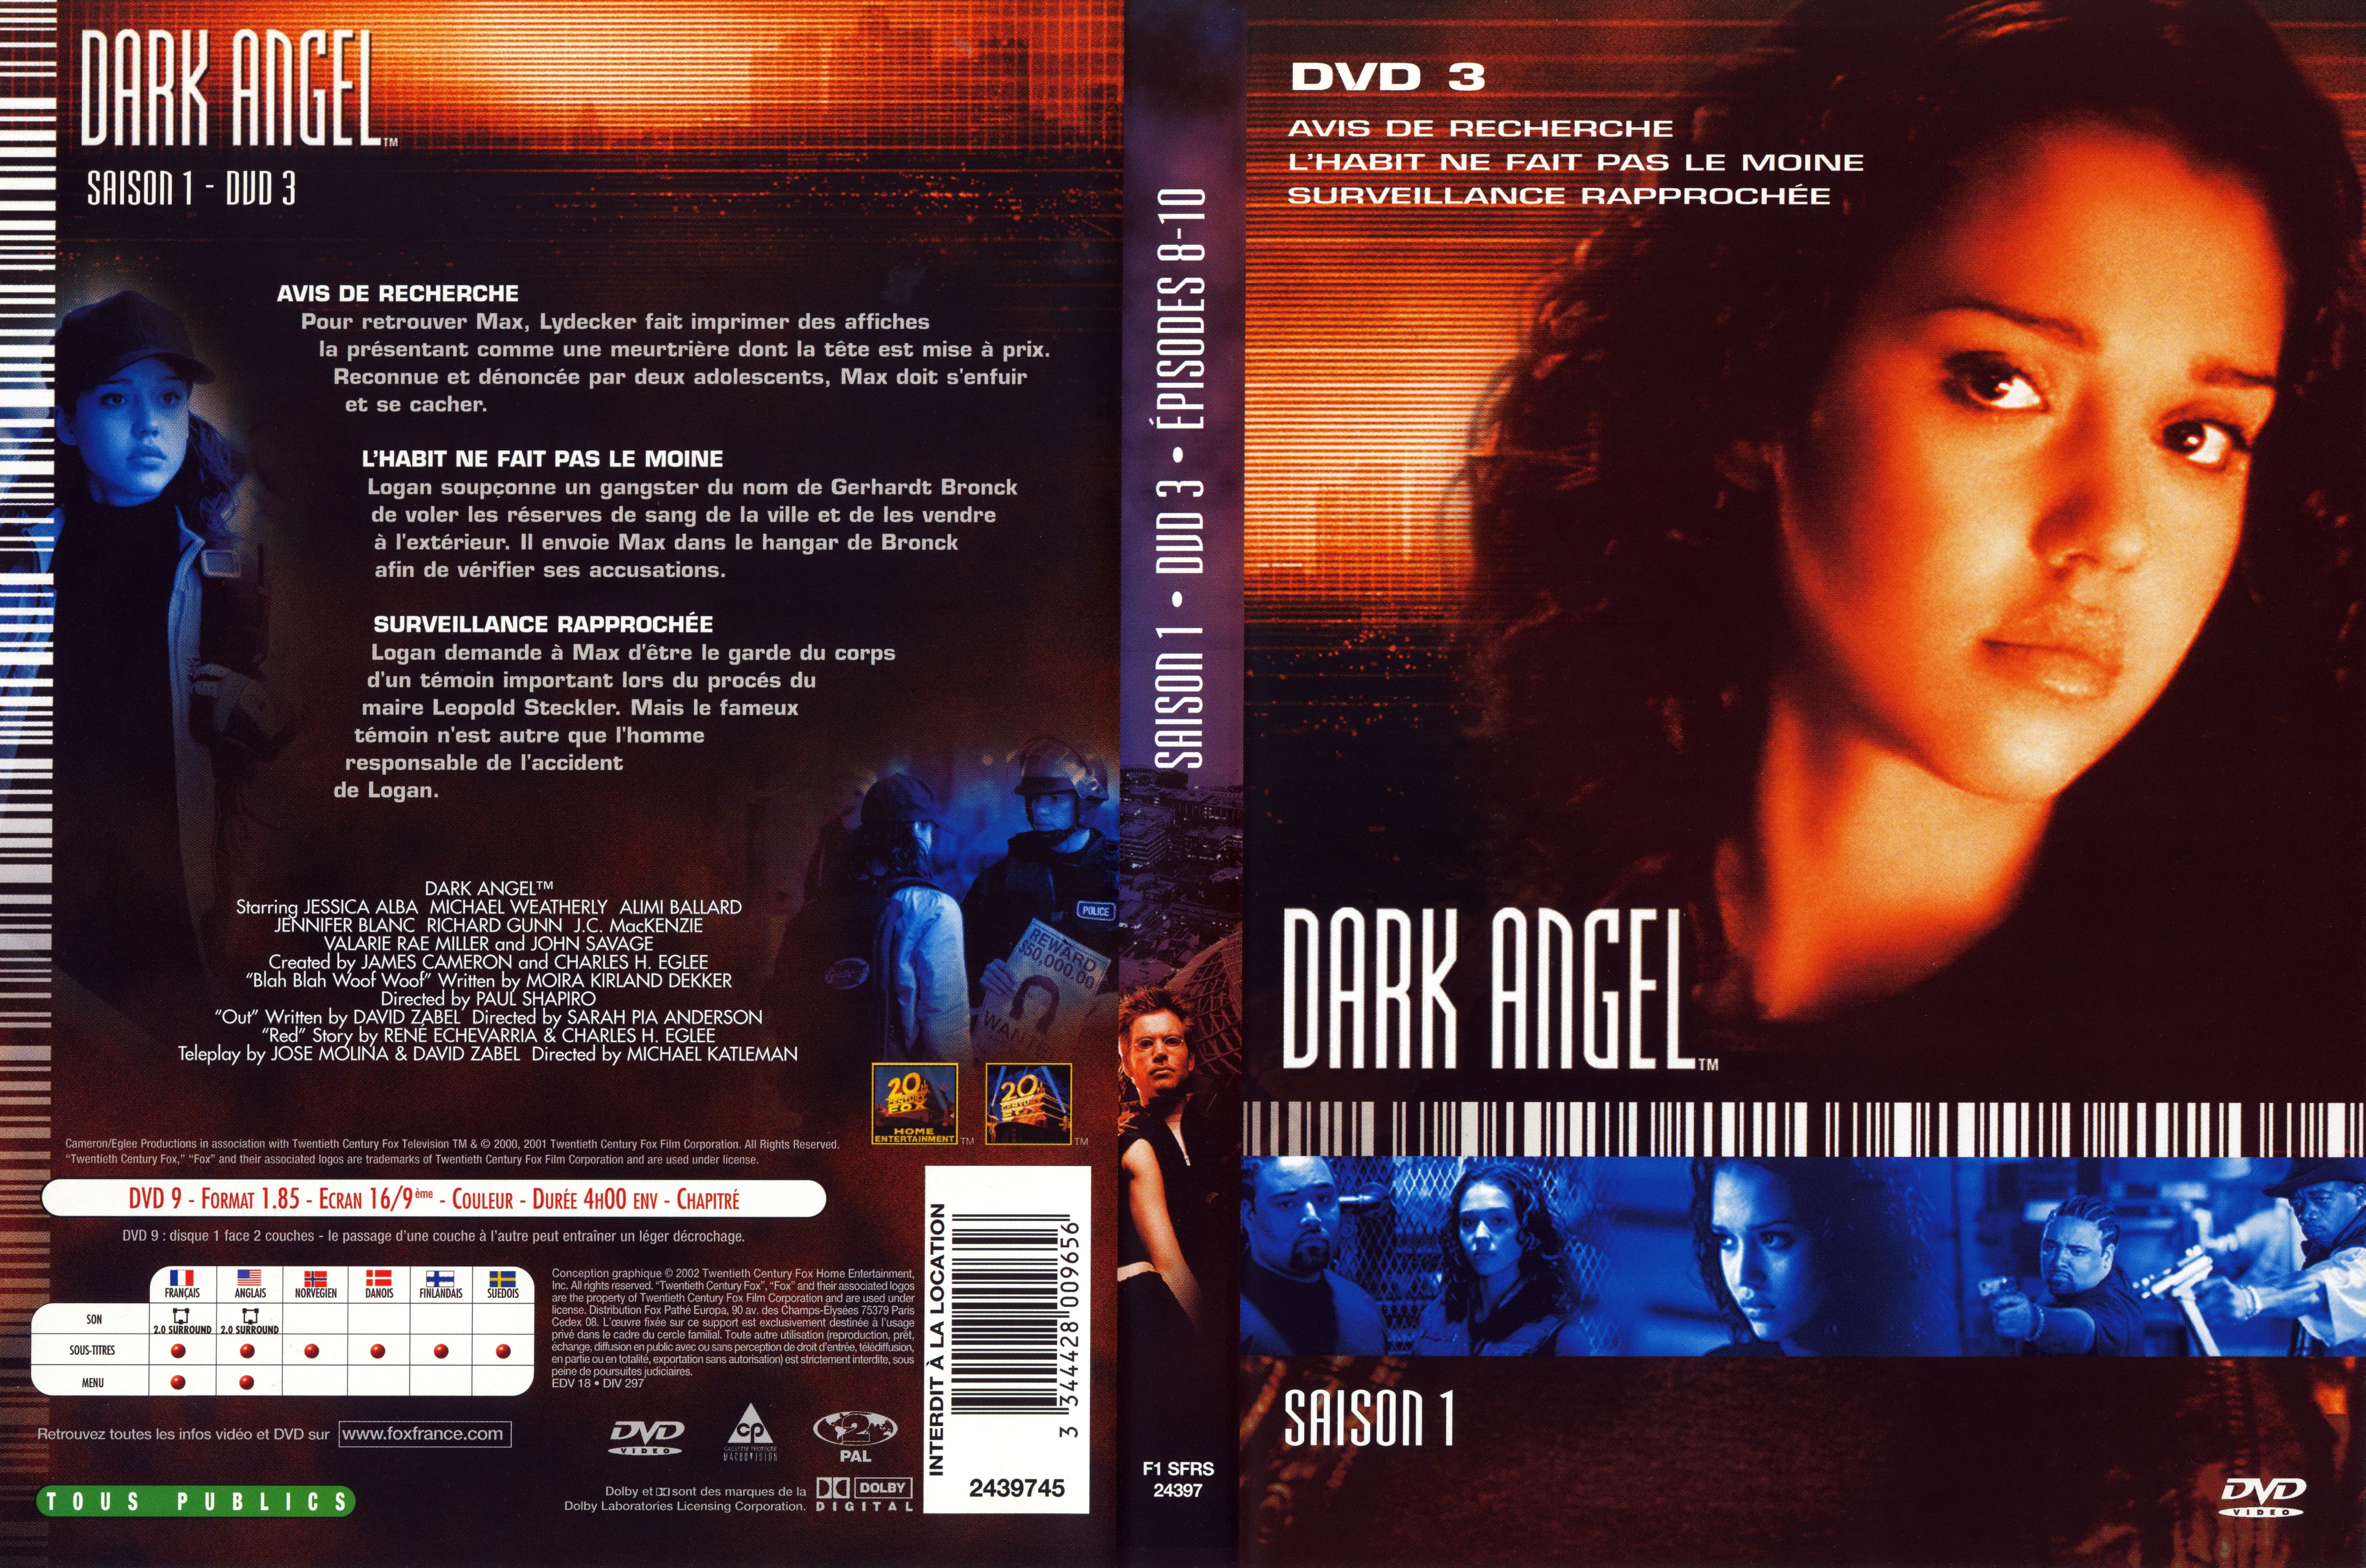 Jaquette DVD Dark Angel Saison 1 DVD 3